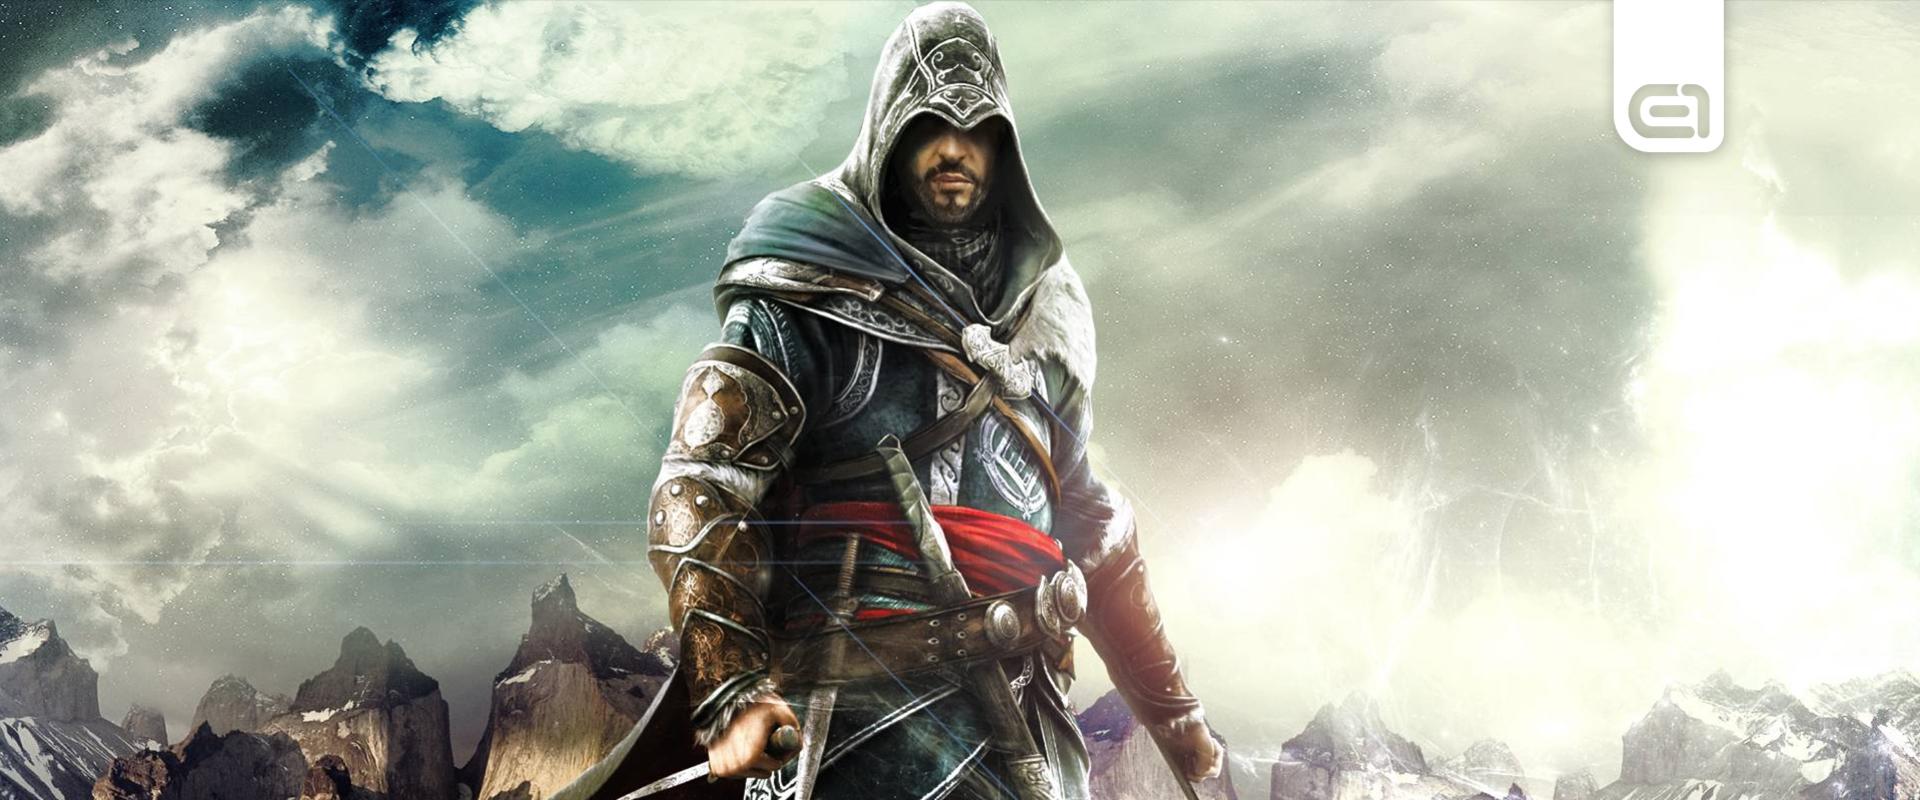 Két főszereplője lehet az új Assassin's Creed-játéknak